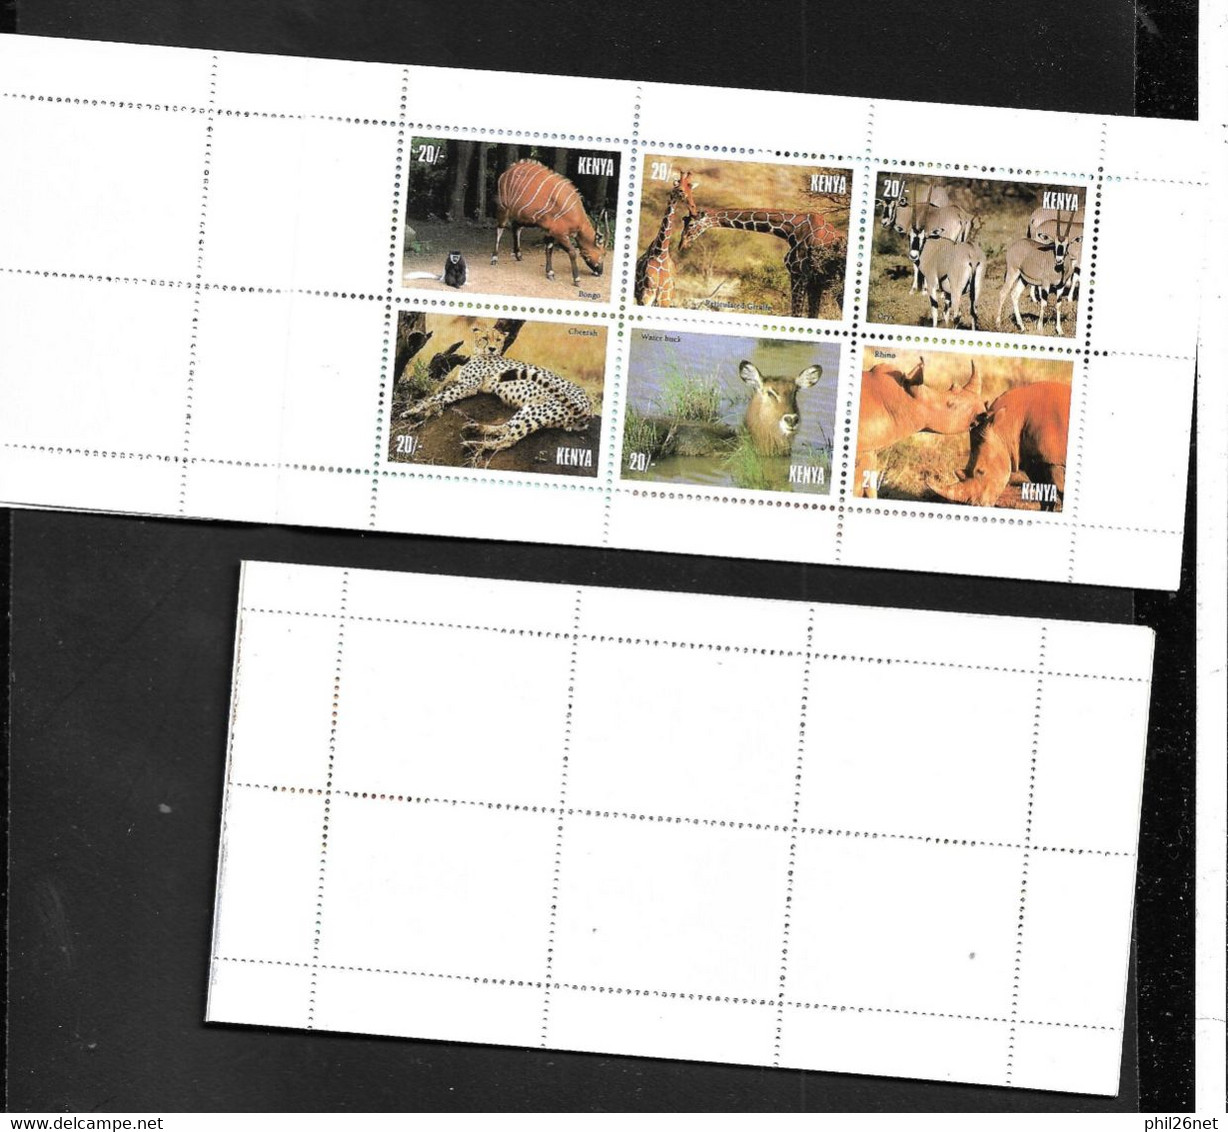 Kenya  Carnet N° C657 Faune complet 24 timbres (4 séries 657 à 662)  + présentations  et Histoire Neufs  * *  TB Rare !